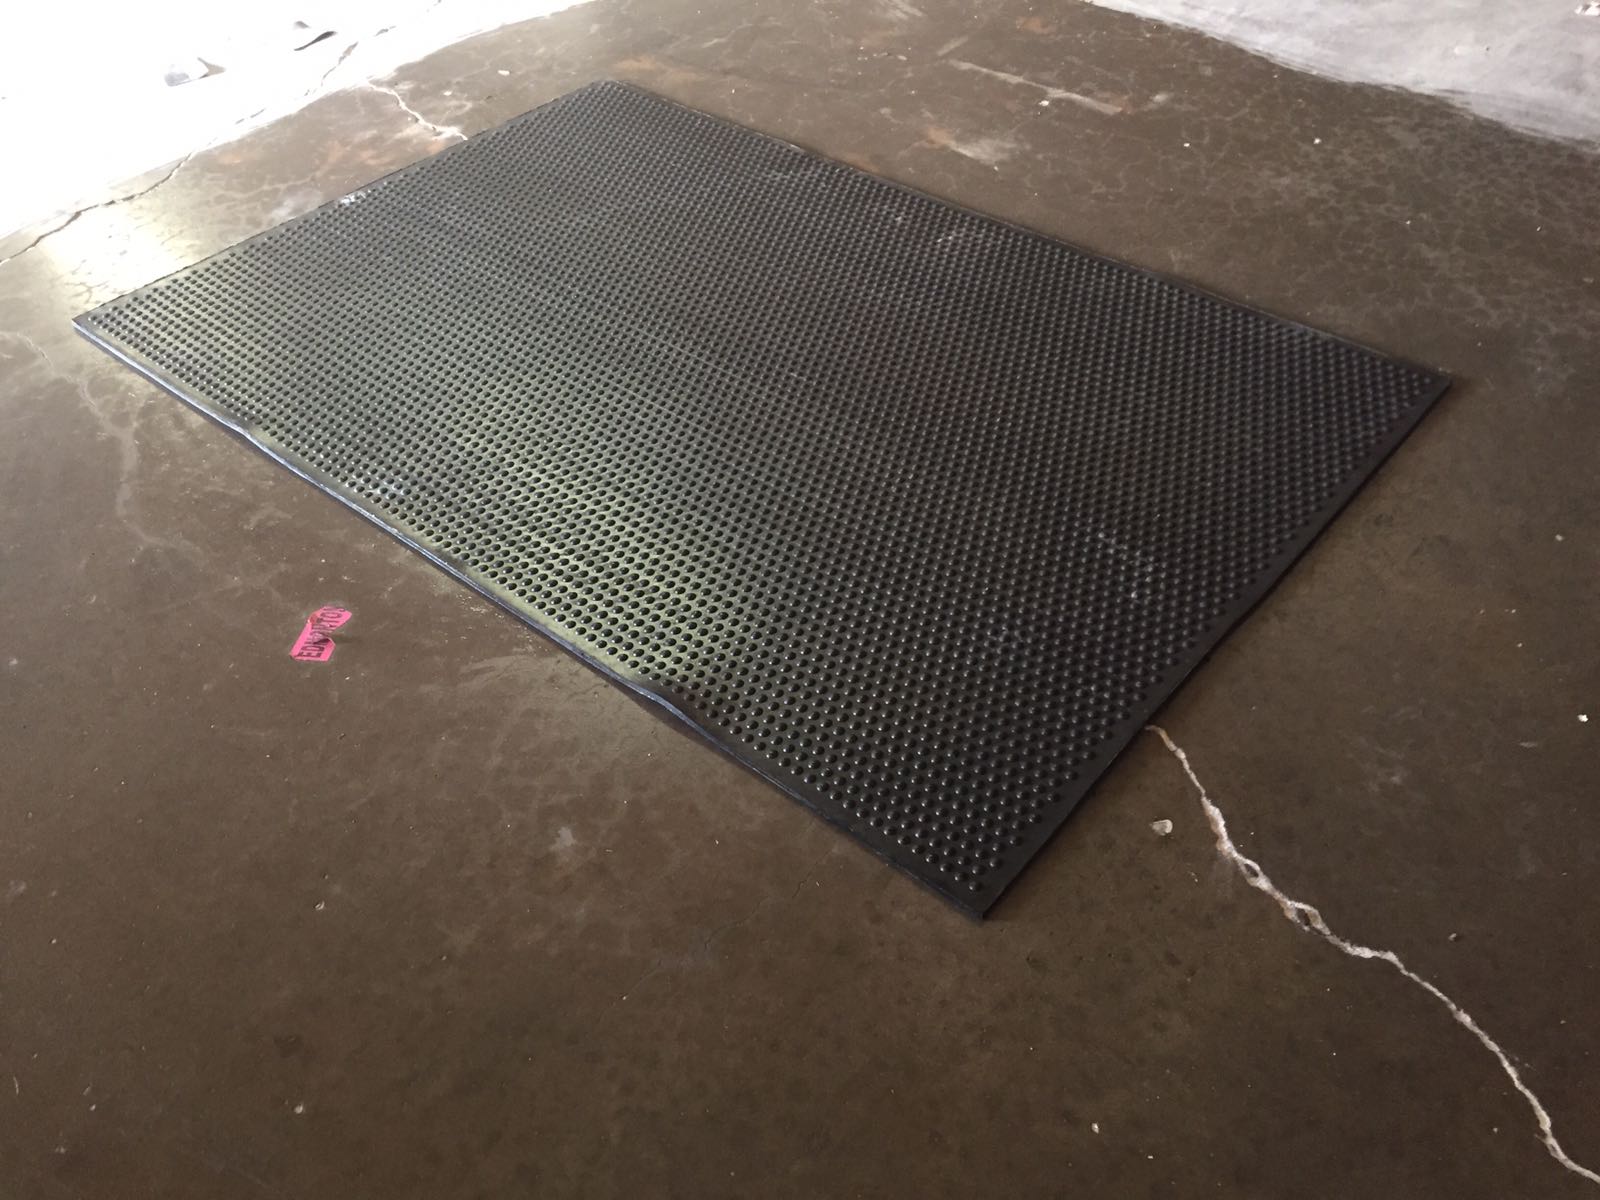 Rubber floor mats